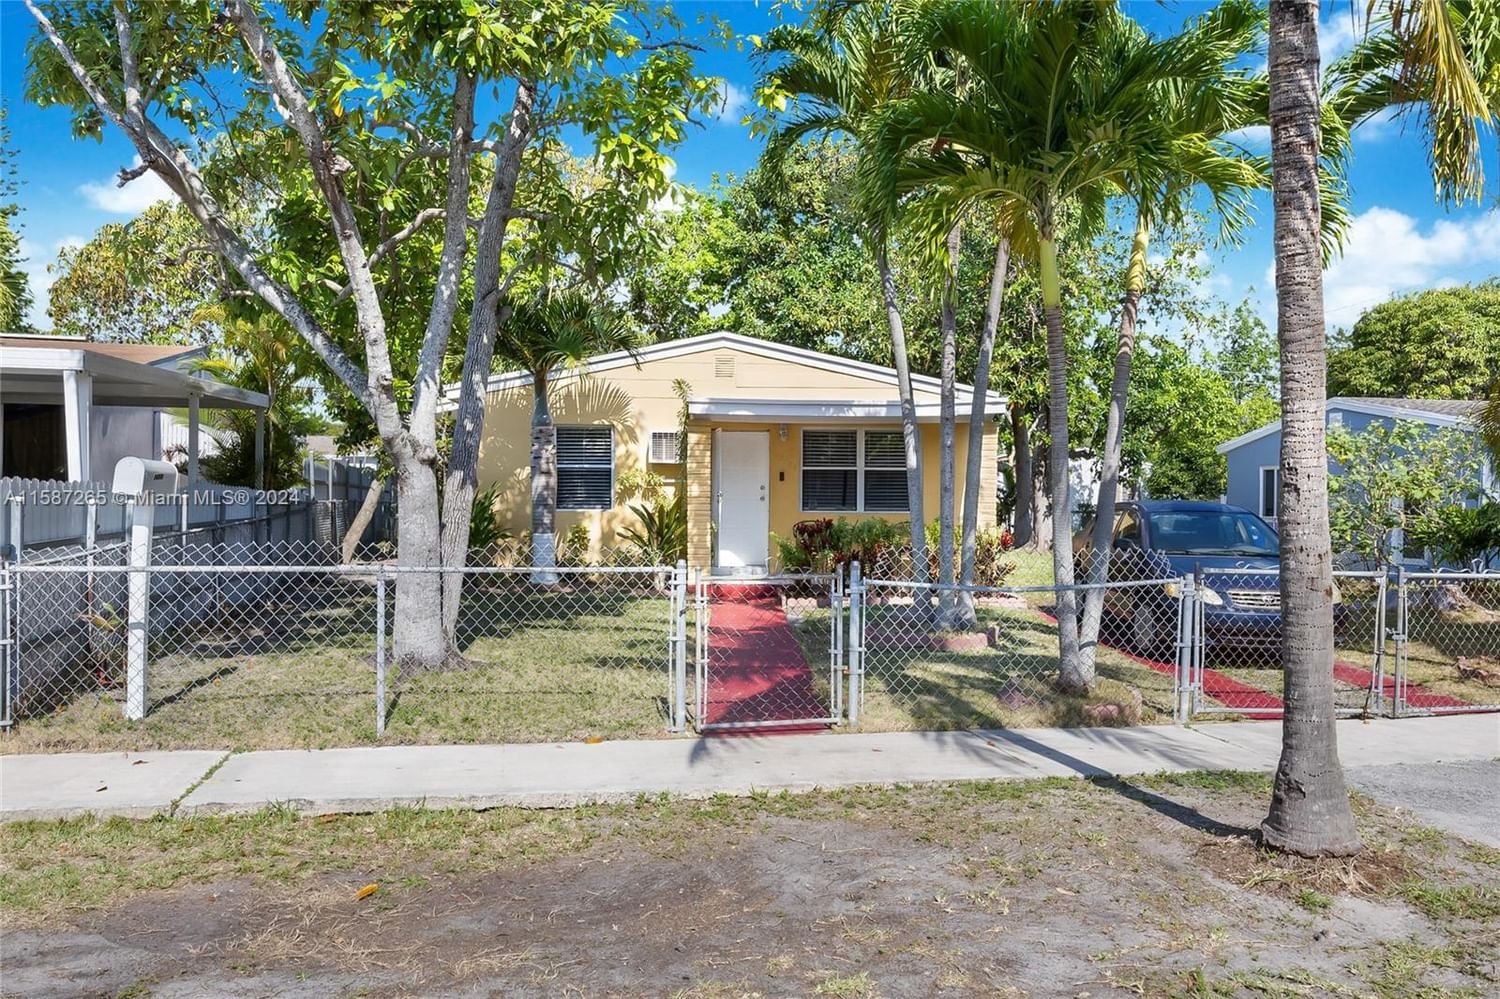 Real estate property located at 15720 15th Pl, Miami-Dade County, MYRA DELLS SUB, North Miami Beach, FL